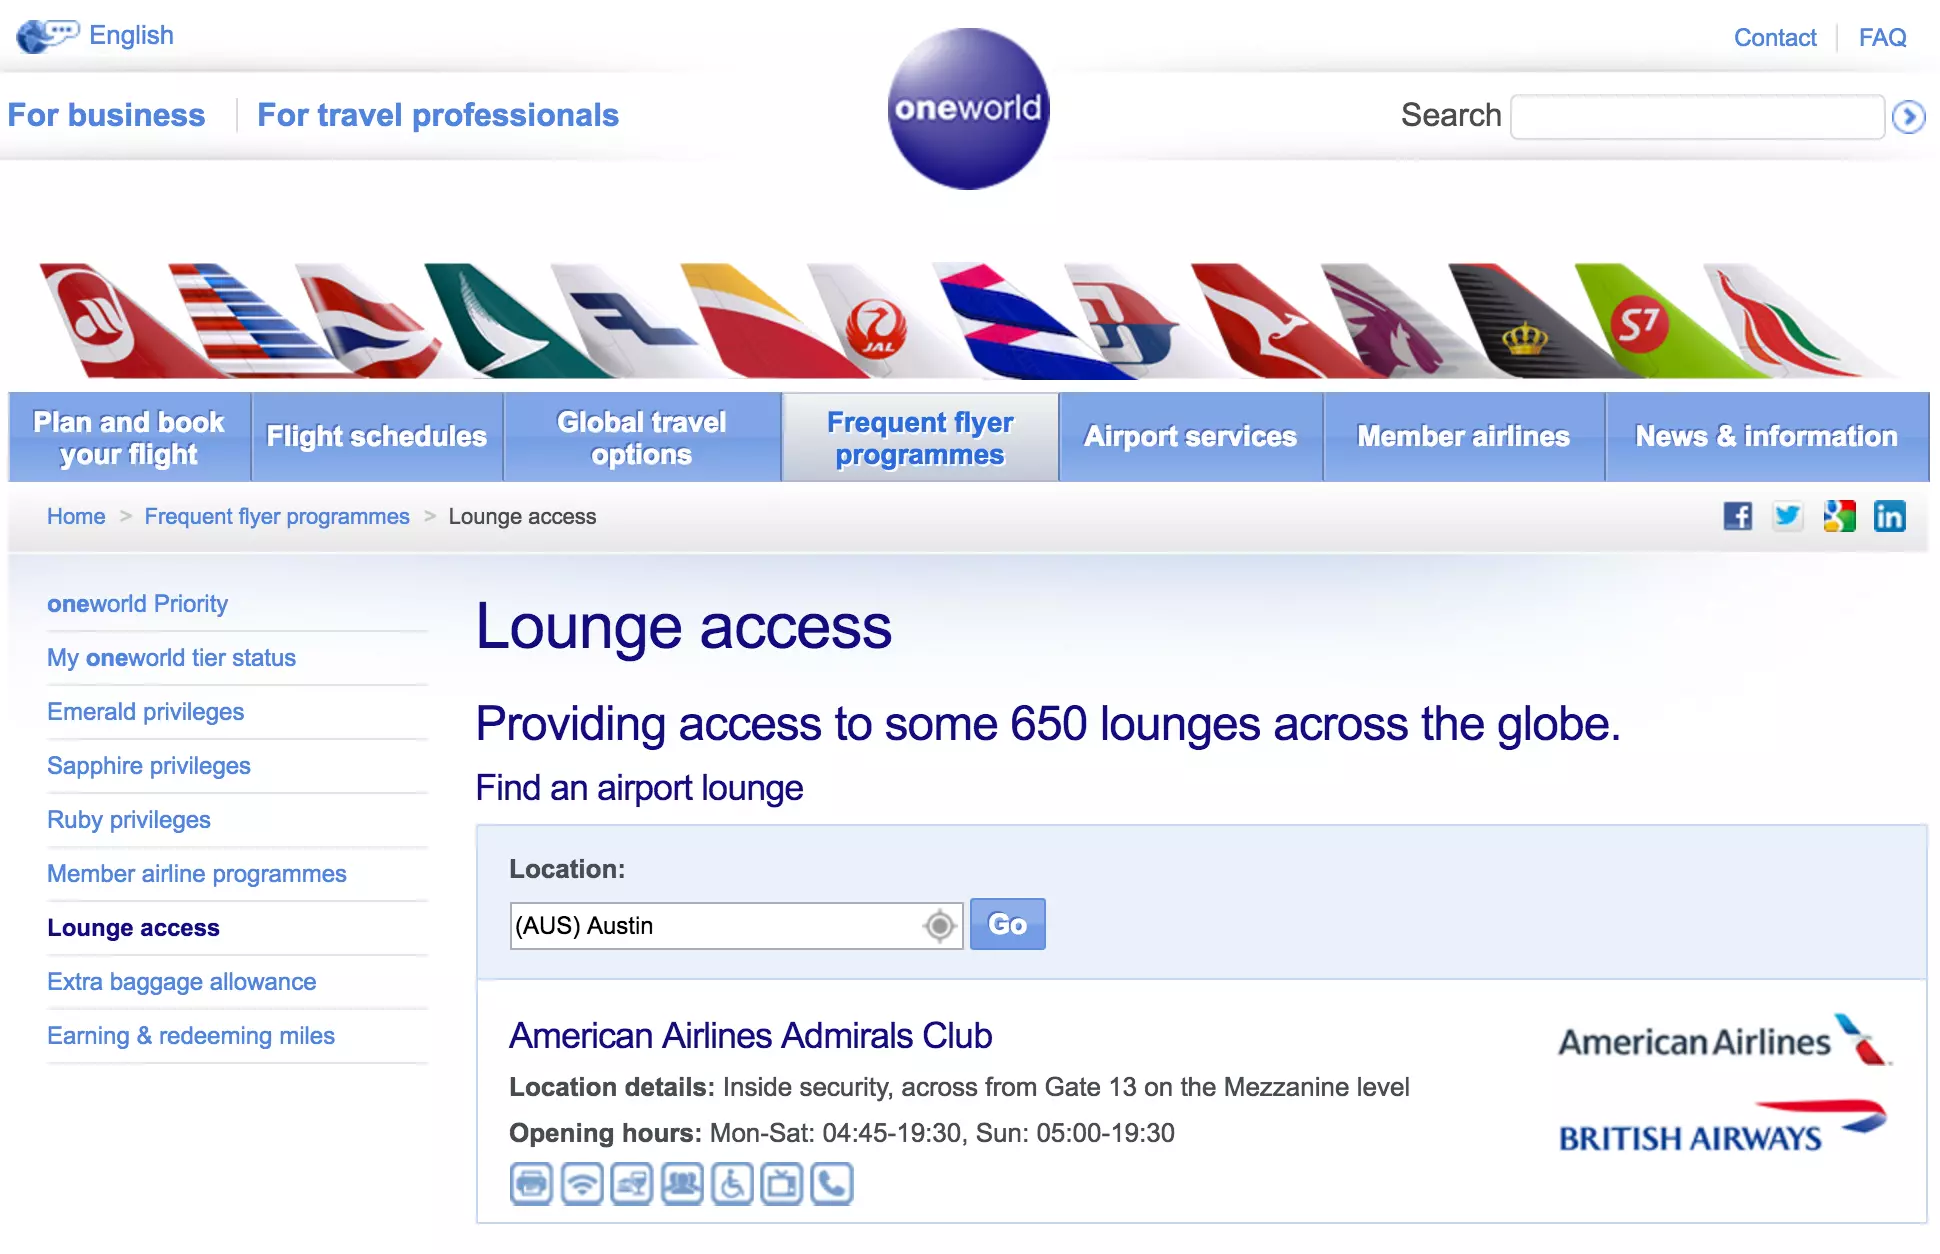 Travel service airlines (тревел/трэвел сервис эйрлайнз): обзор авиакомпании, оказываемые услуги и цены, регистрация на рейс онлайн